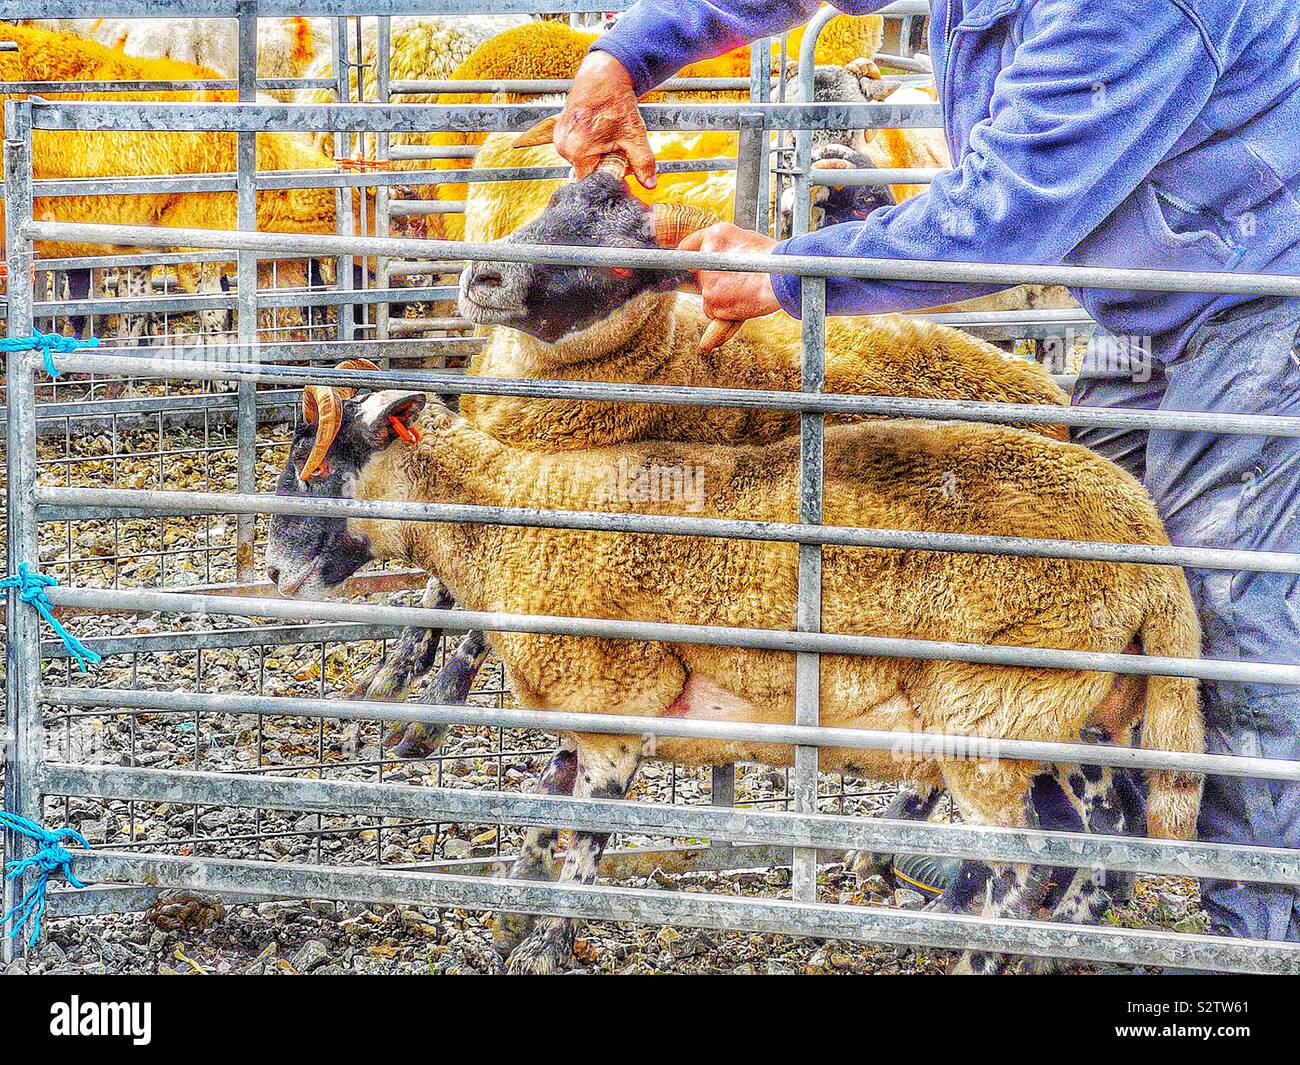 L'accaparement de juge cornes de moutons, de l'agriculture nord Harris, Tarbert, île de Lewis et Harris, Hébrides extérieures, en Écosse Banque D'Images